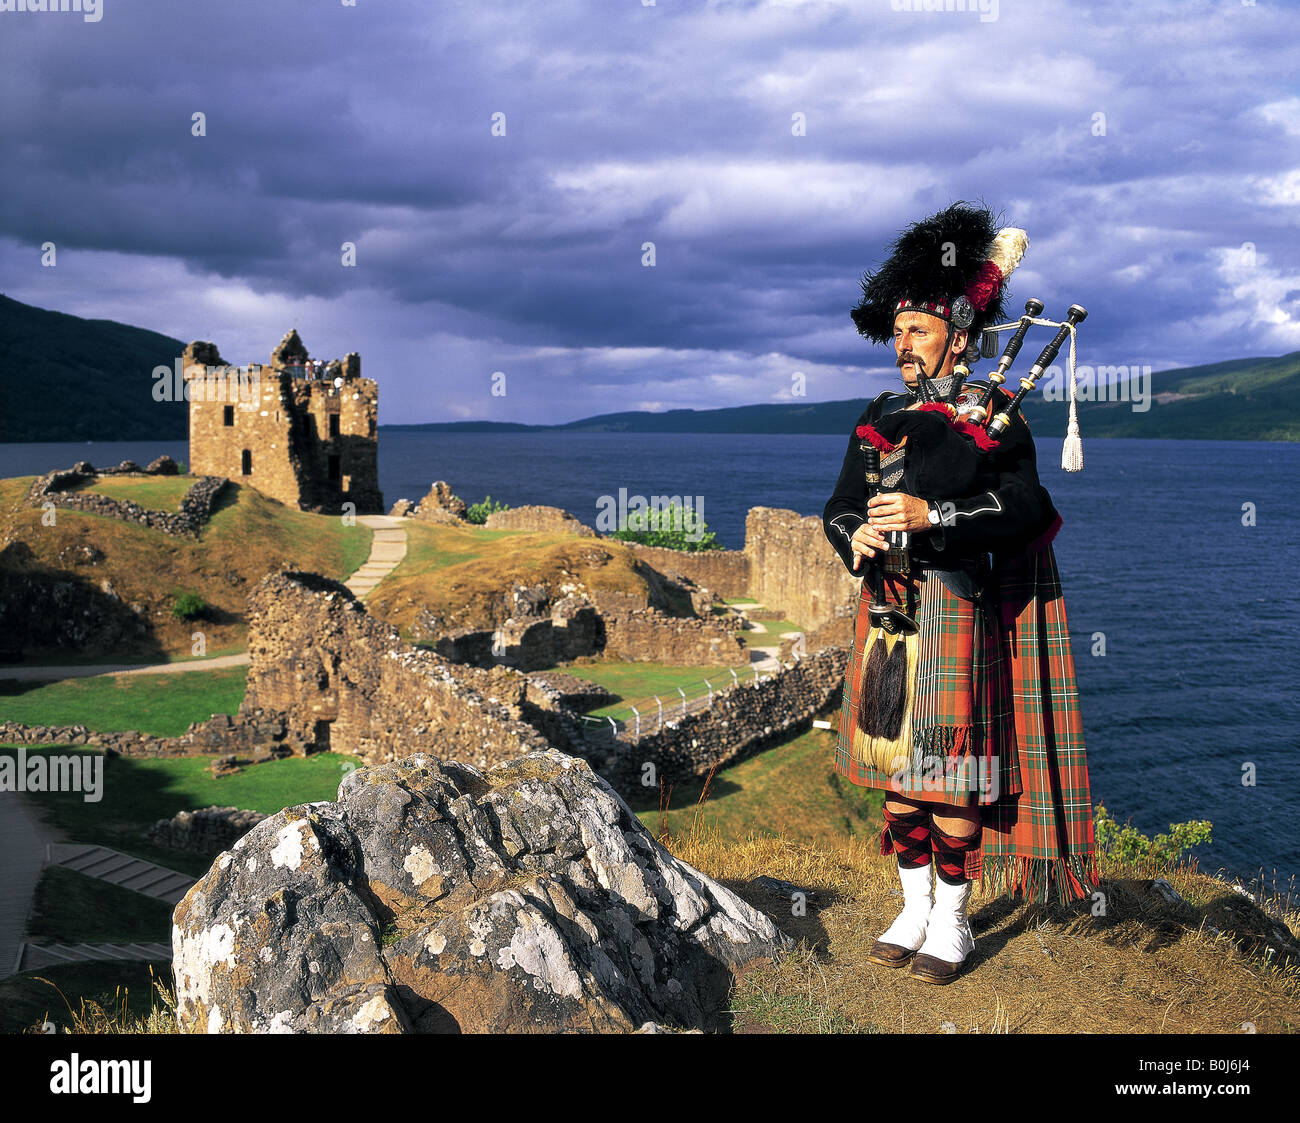 Cornemuse écossaise au château d'Urquhart Loch Ness en Écosse Banque D'Images